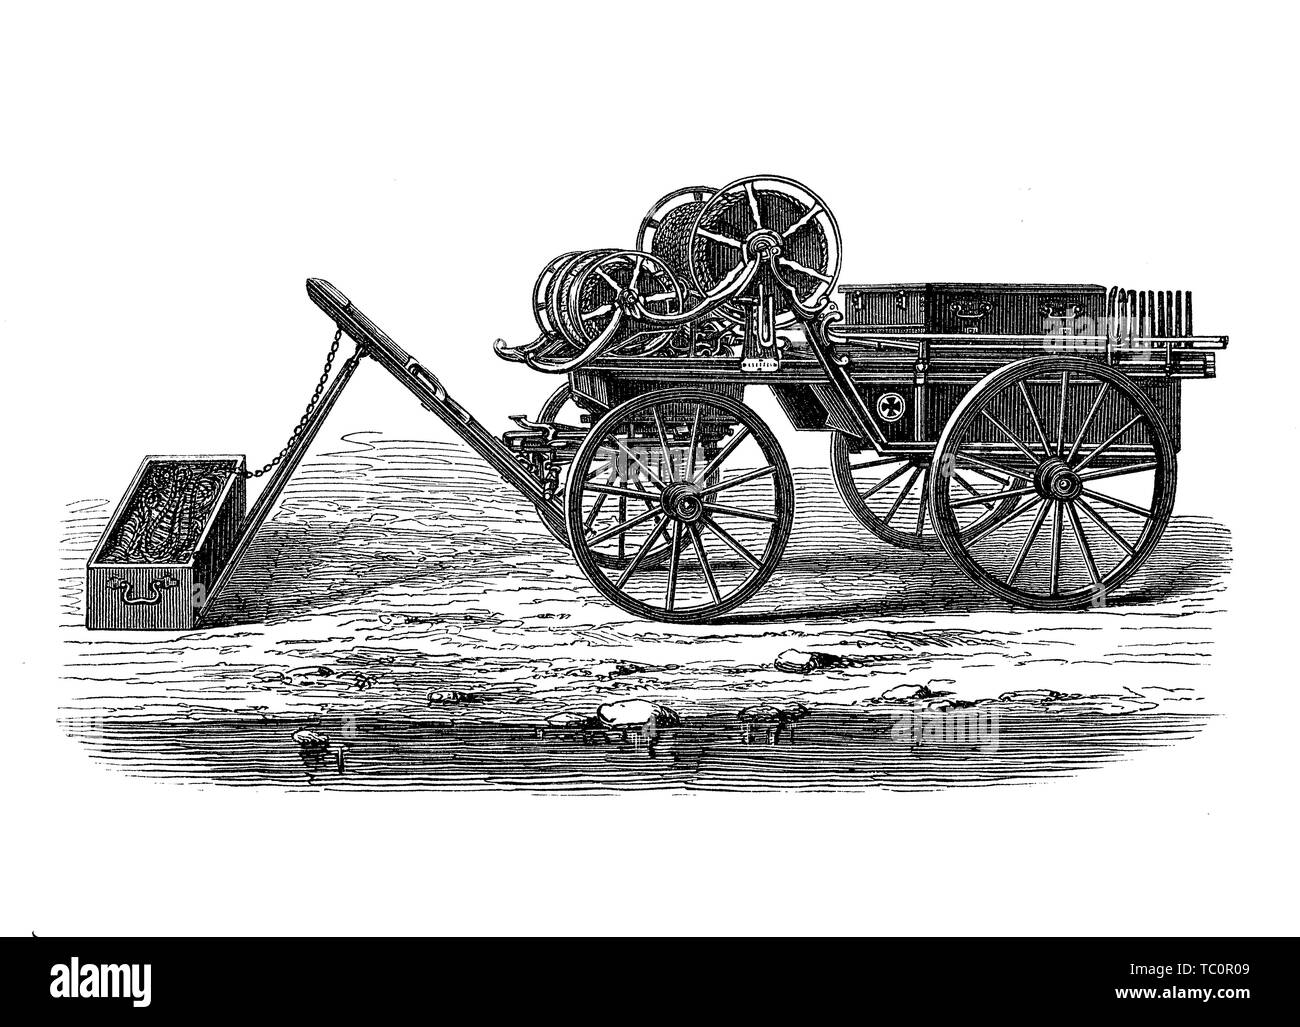 Raketenwerfer Maschinengewehr mit Leitung für Rettung Zweck oder als Waffe aus dem 19. Jahrhundert angebracht Stockfoto